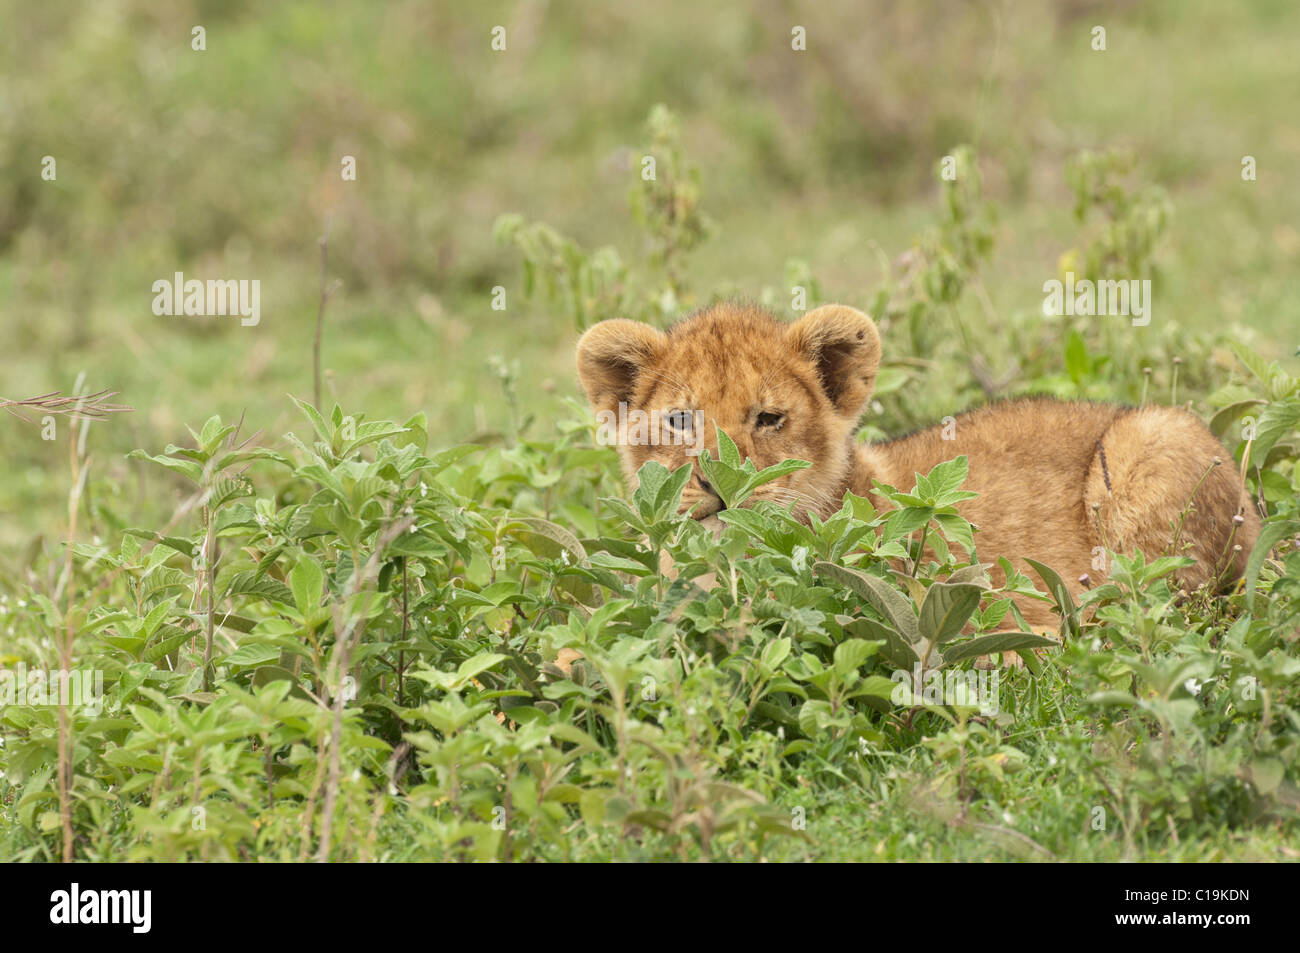 Stock photo d'un lion cub se reposant dans la végétation verte. Banque D'Images